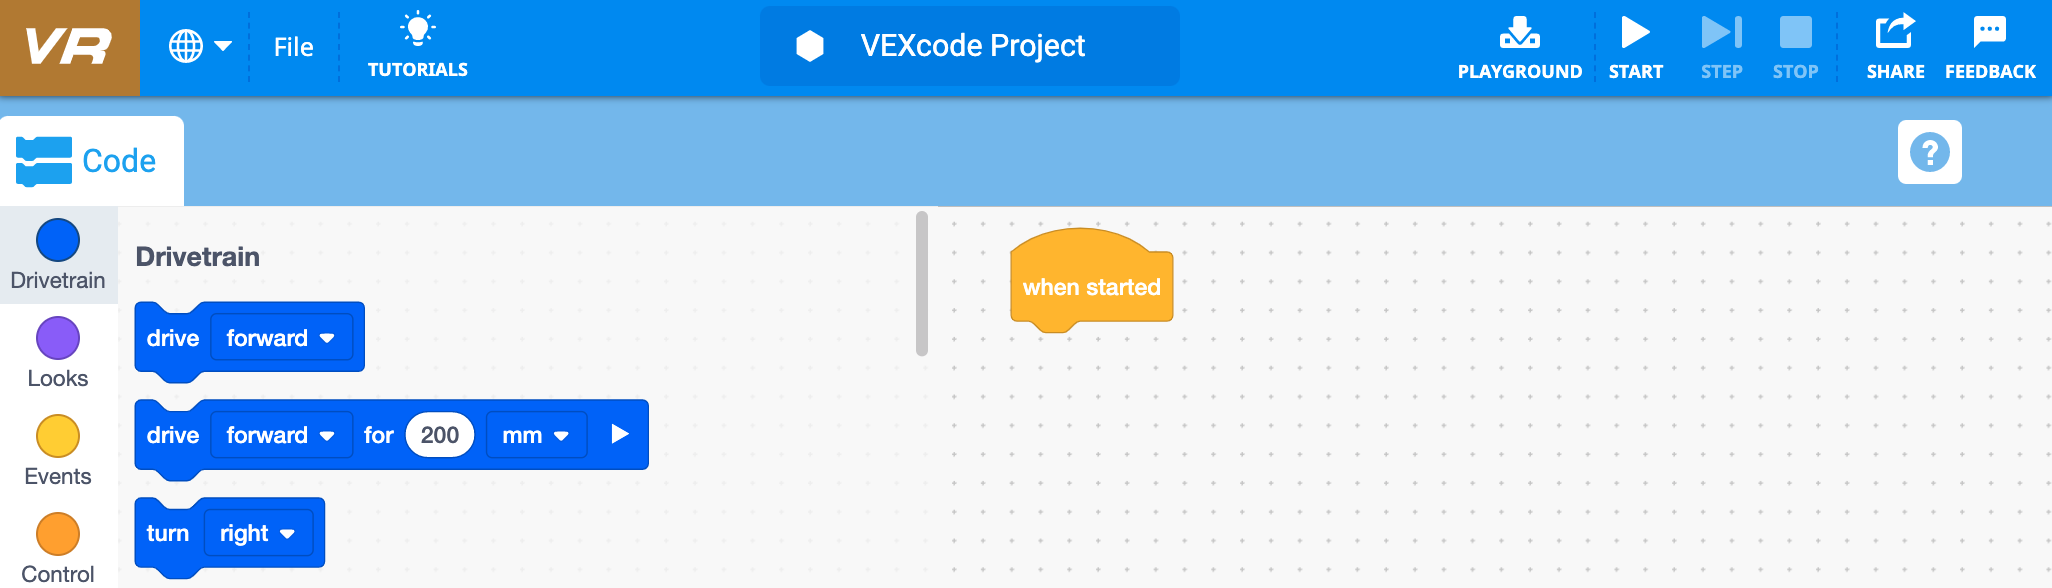 Start VEXcode VR